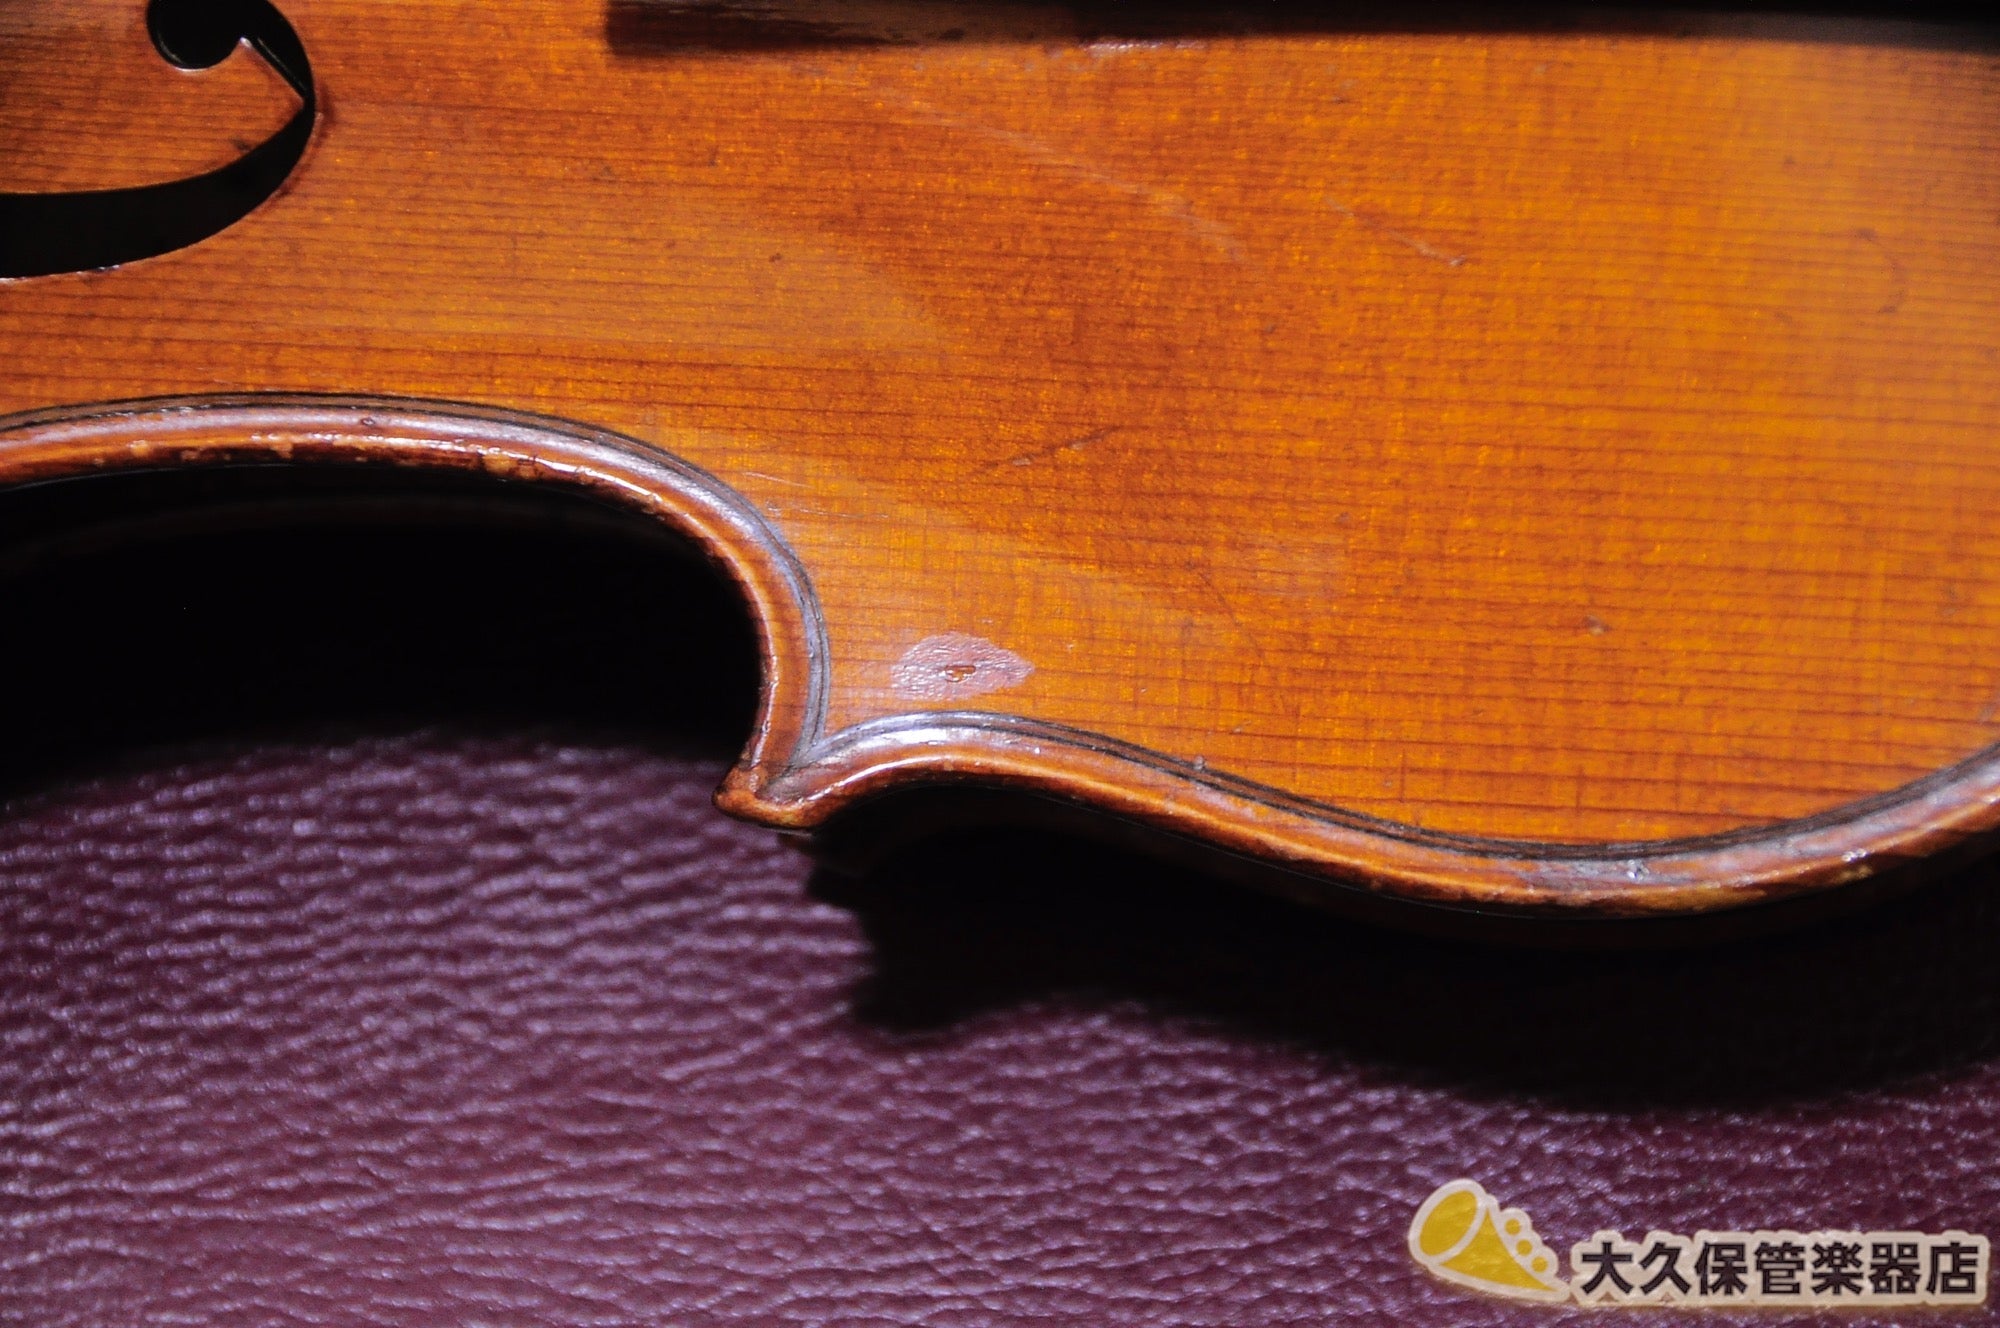 ケースは付属しておりますフランス製 4/4バイオリン 虎杢 Emile Ravier ...